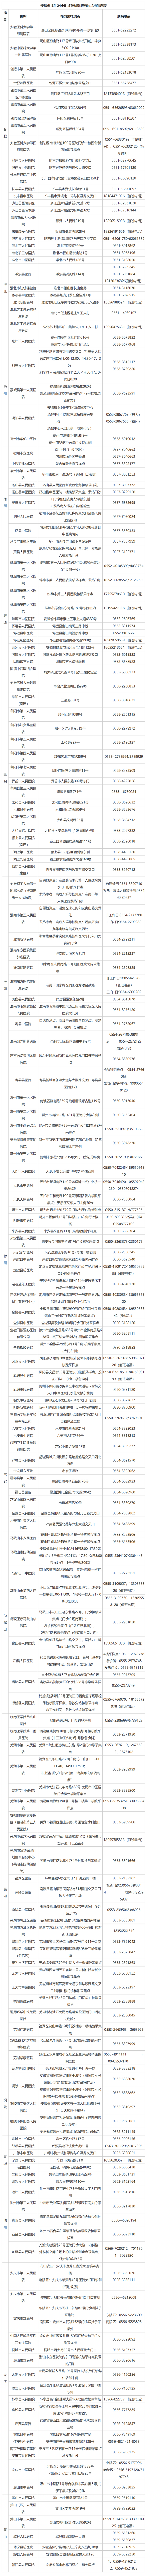 安徽省提供24小时核酸检测服务机构名单.png